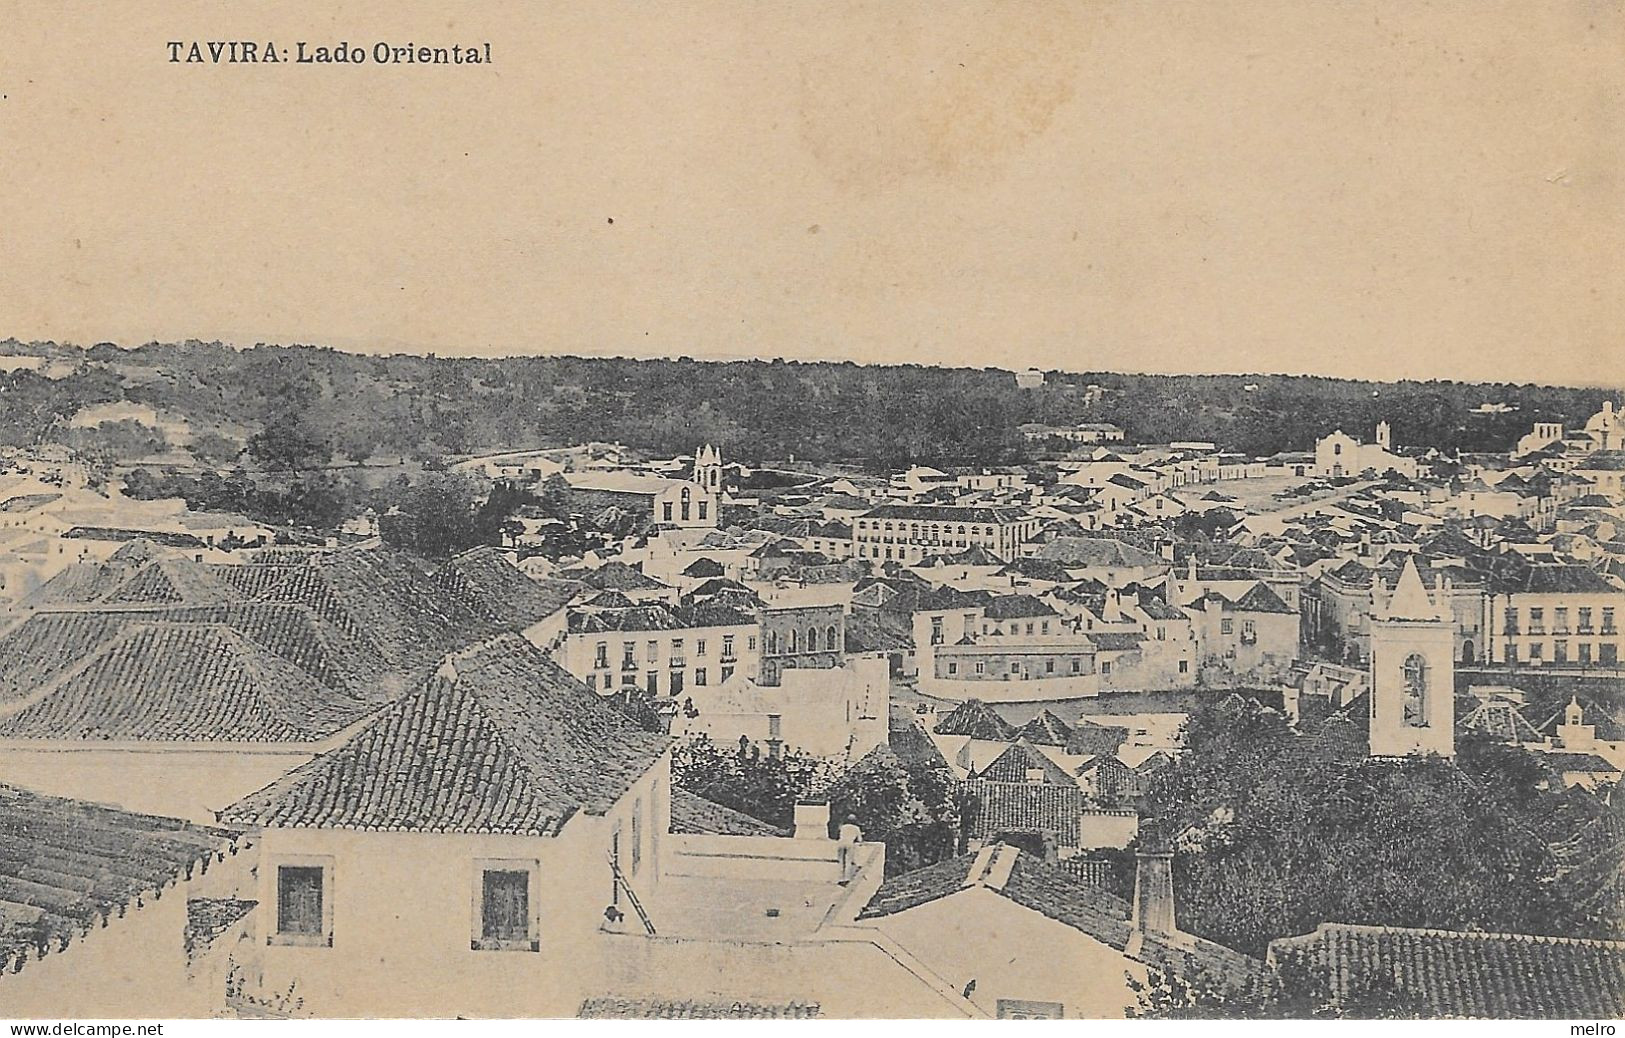 PORTUGAL- TAVIRA - Lado Ocidental - (Edição Da Tabacaria Popular - Tavira). - Faro